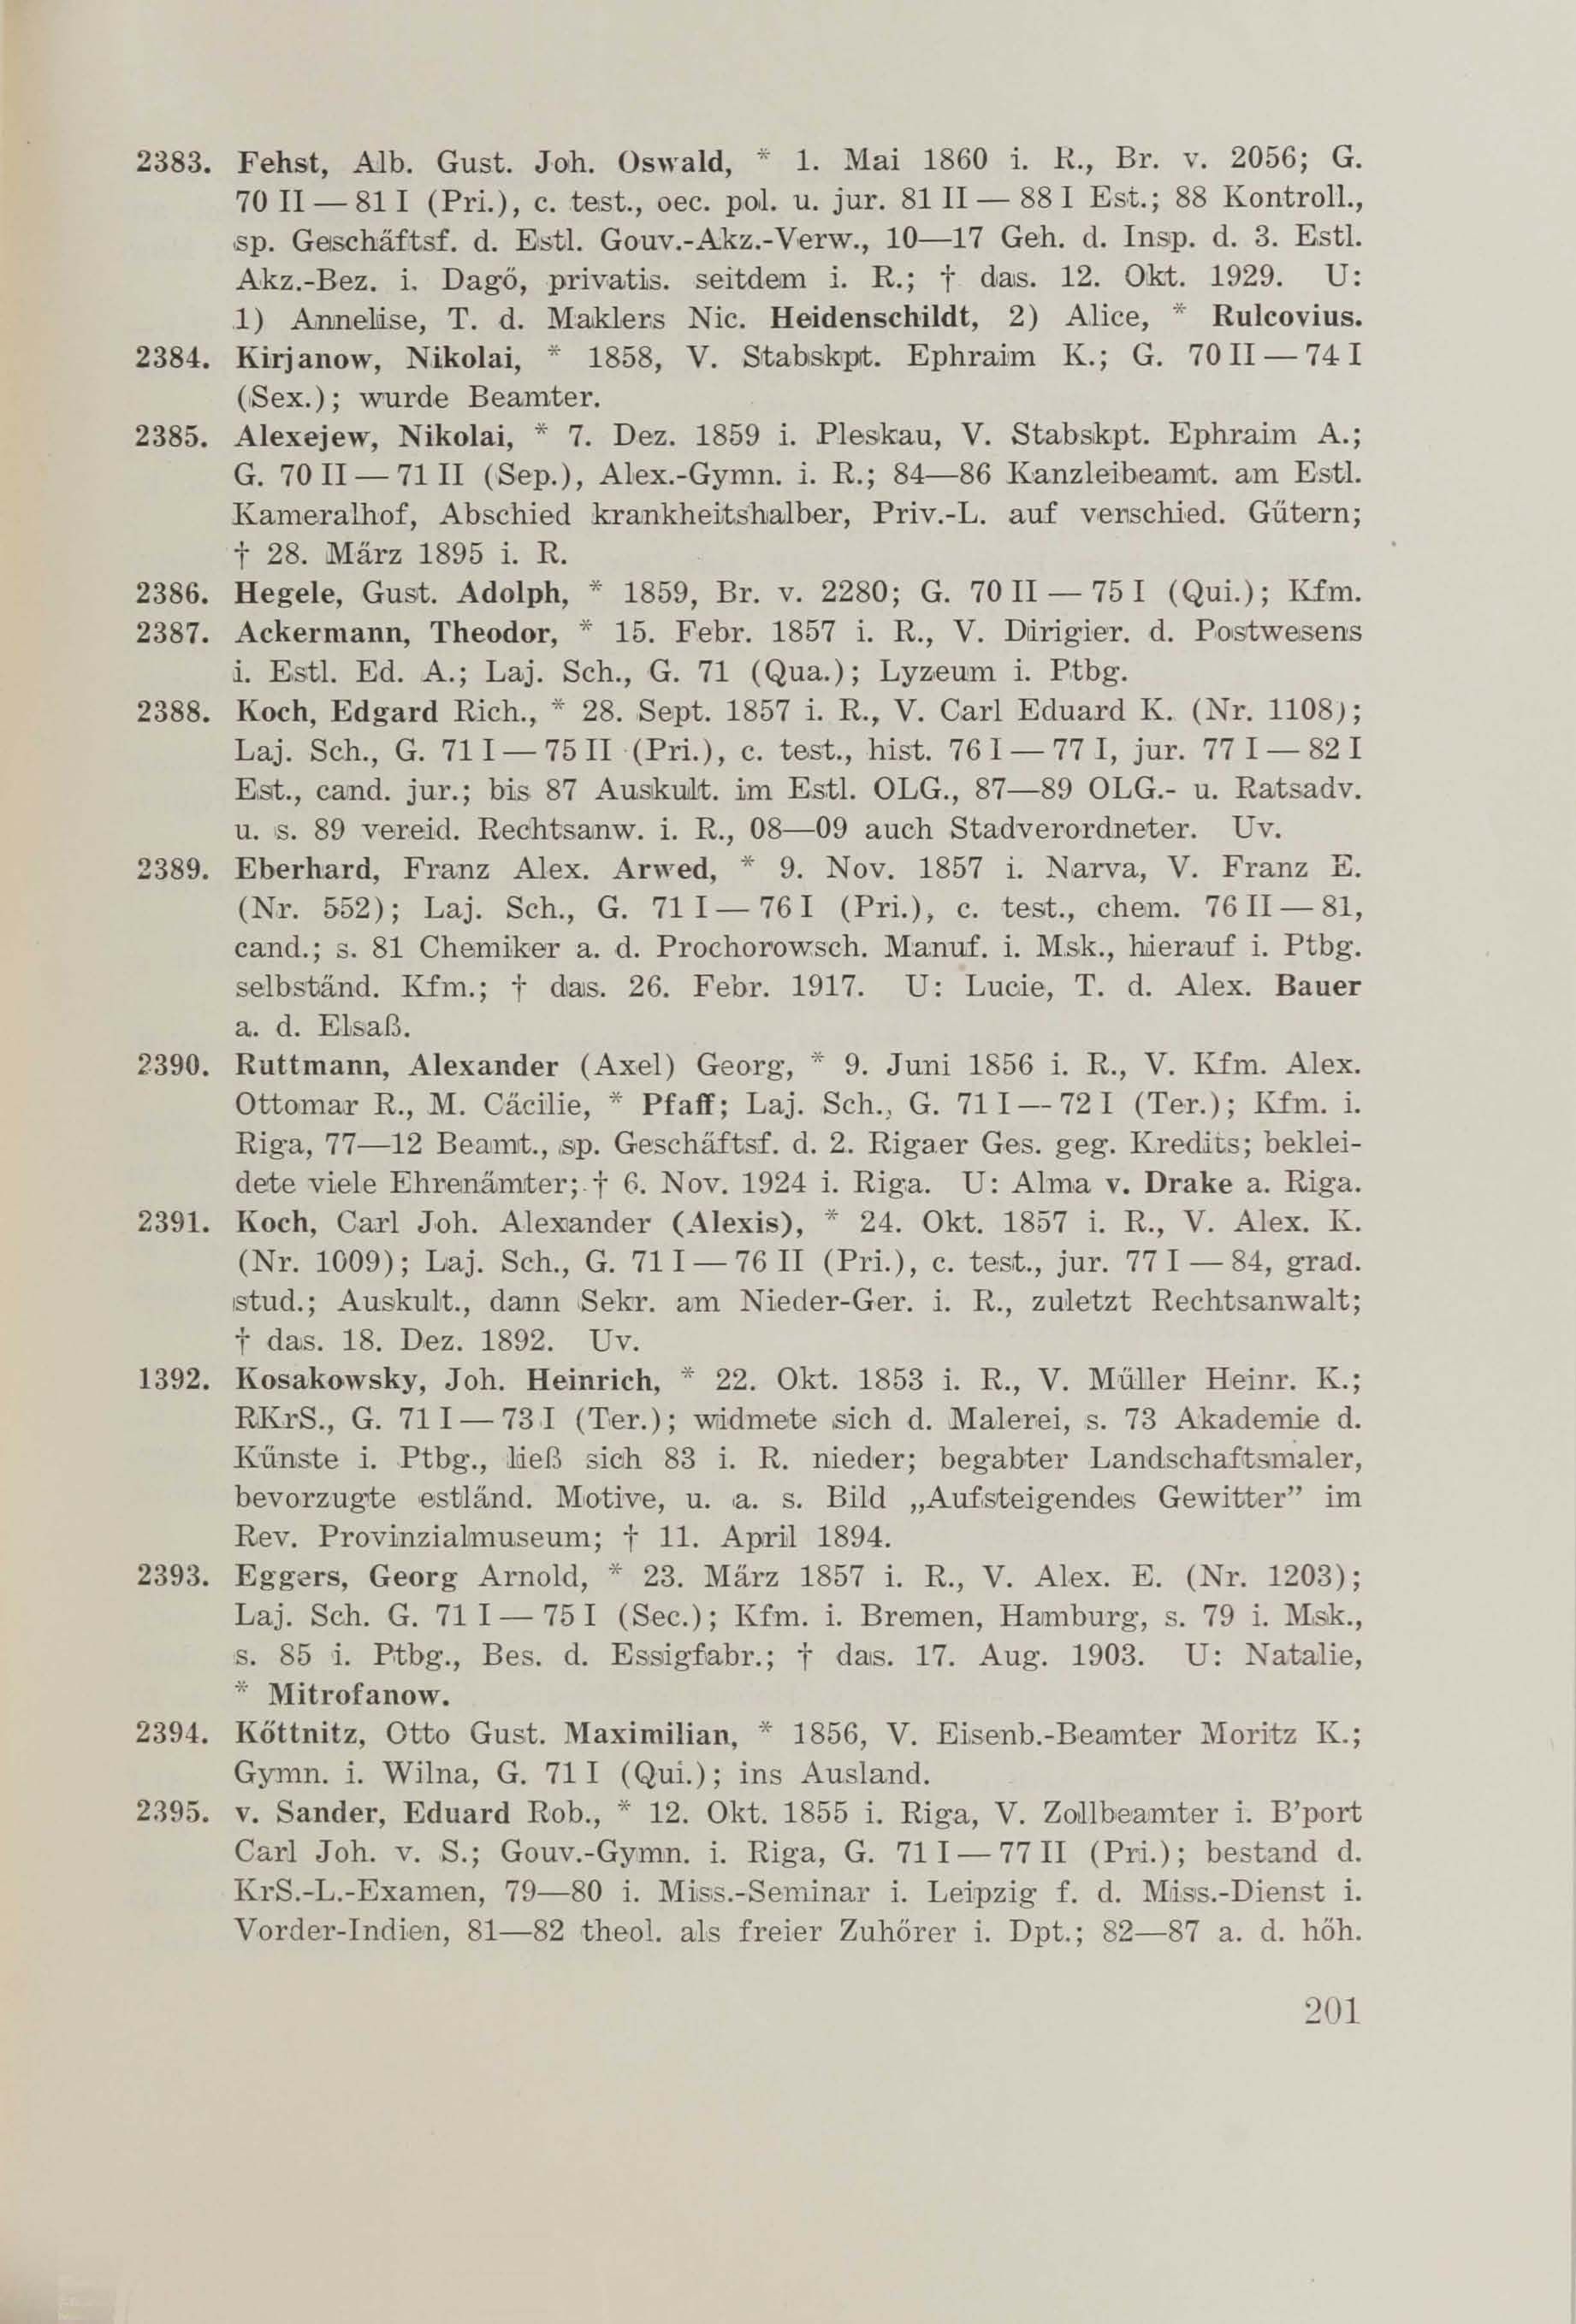 Schüler-Verzeichnis des Revalschen Gouvernements-Gymnasiums 1805–1890 (1931) | 211. (201) Main body of text